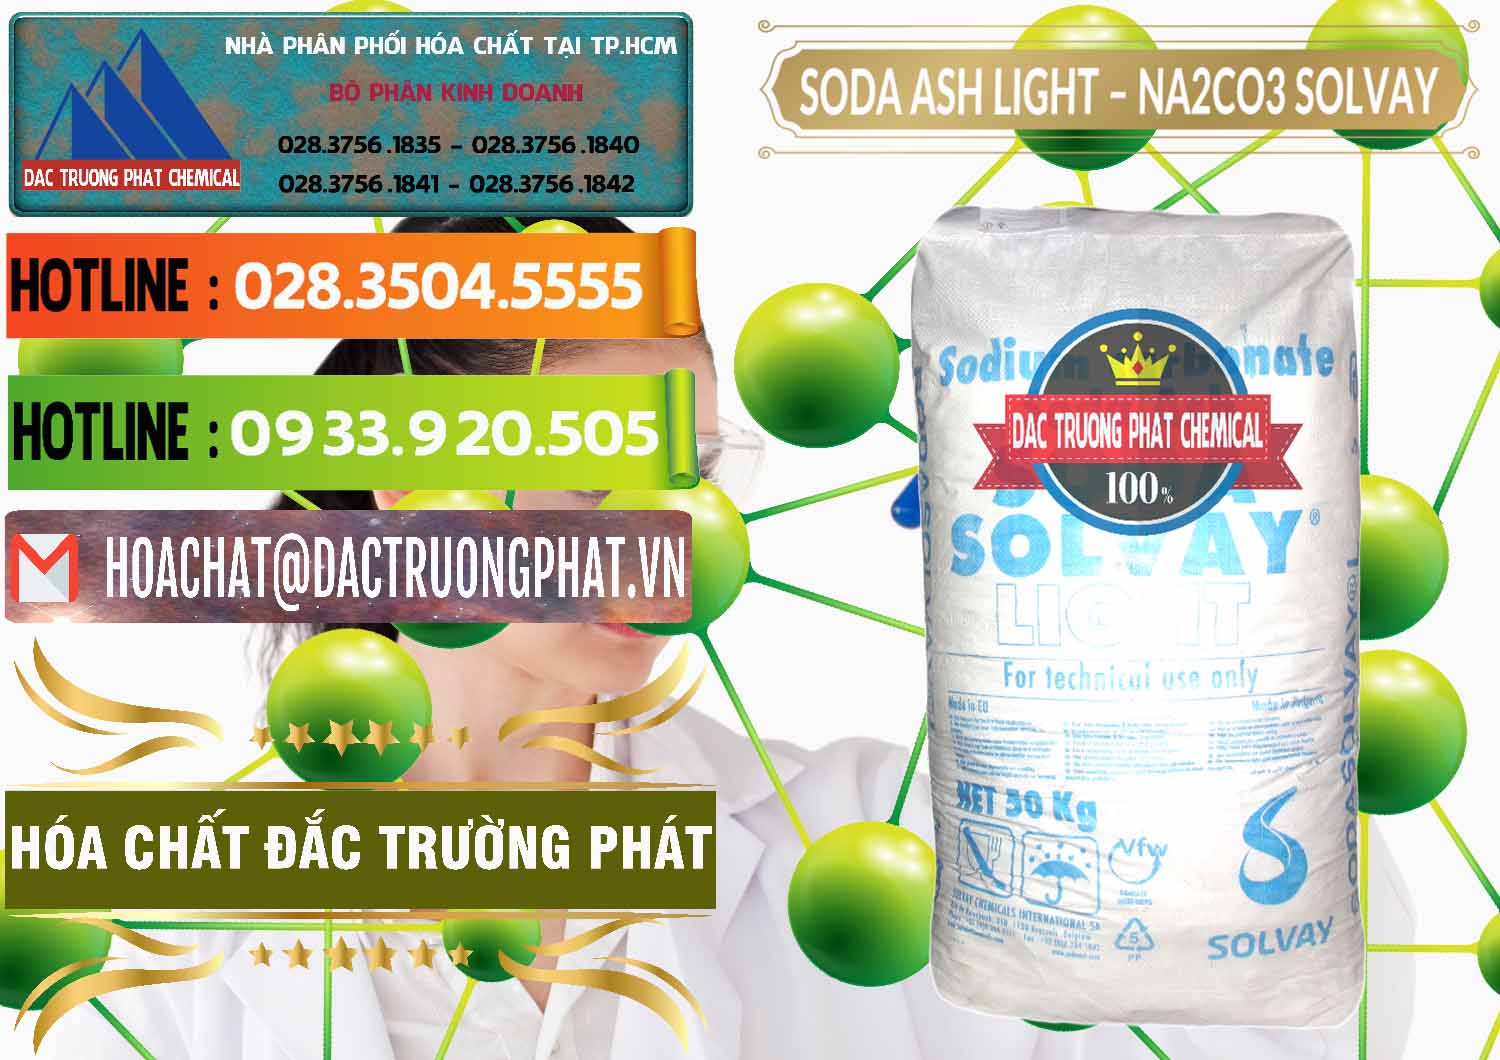 Cty cung cấp và bán Soda Ash Light - NA2CO3 Solvay Bulgaria - 0126 - Chuyên kinh doanh & cung cấp hóa chất tại TP.HCM - cungcaphoachat.com.vn